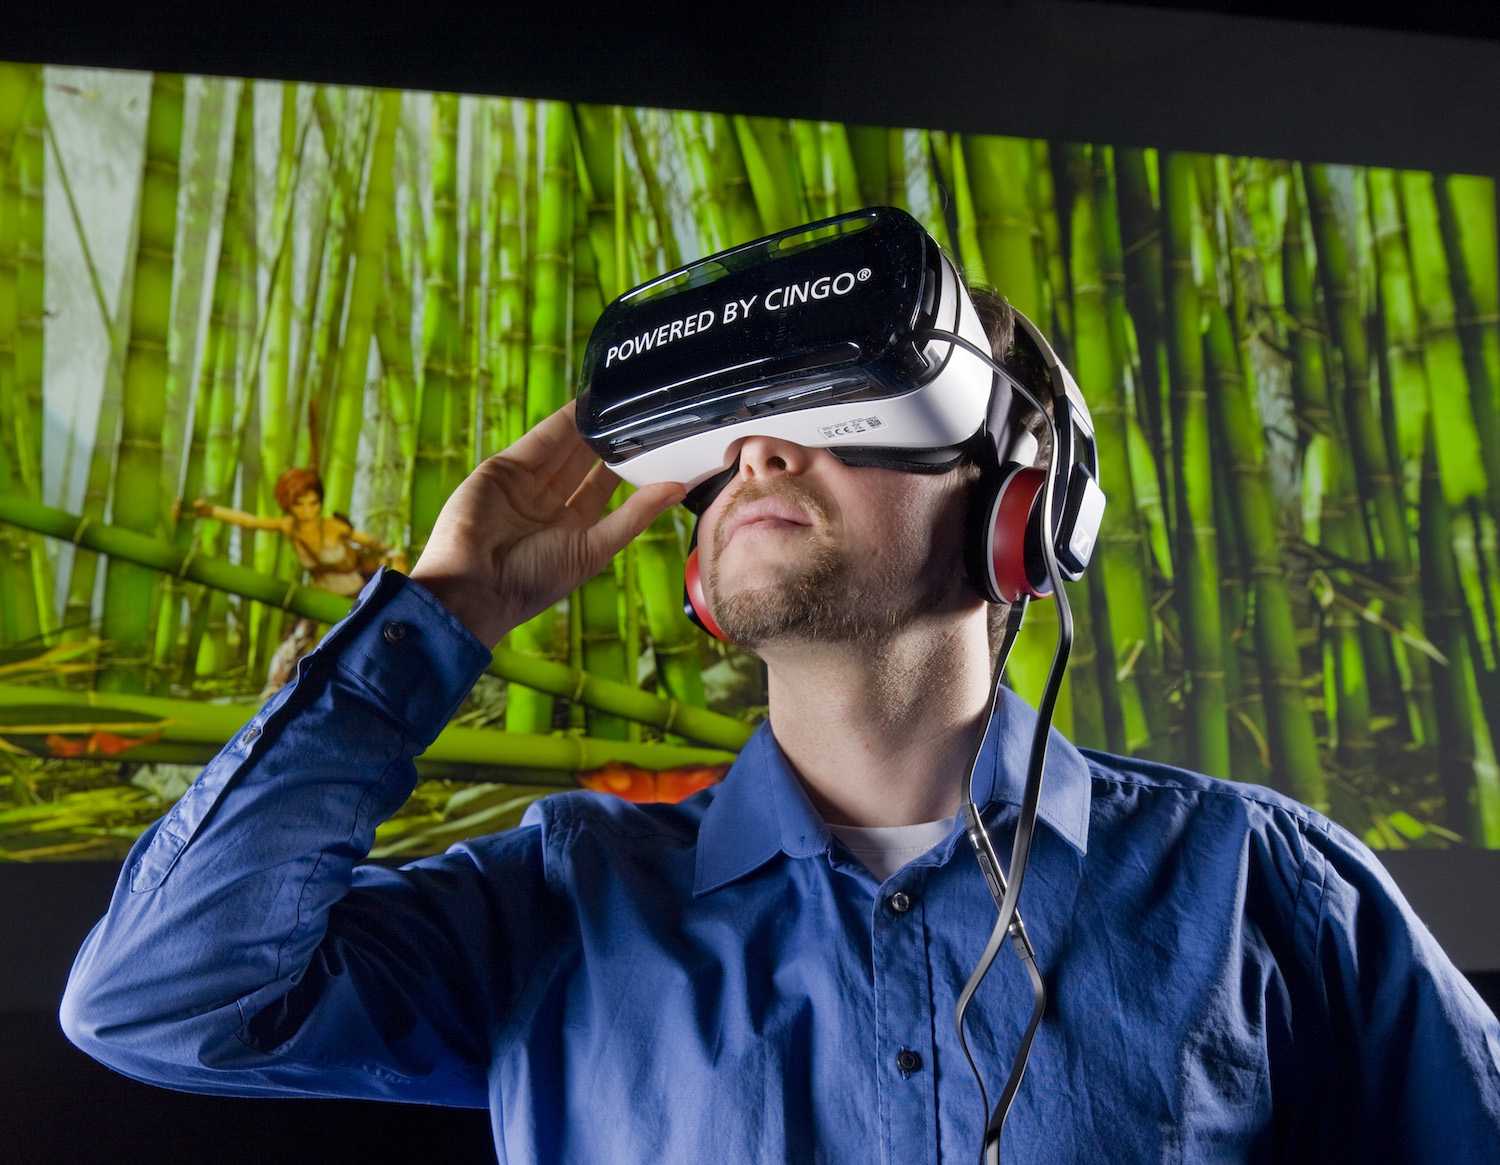 Vr type. VR виртуальная реальность. Виртуальная реальность без погружения. Человек в виртуальной реальности. Очки виртуальной реальности на человеке.